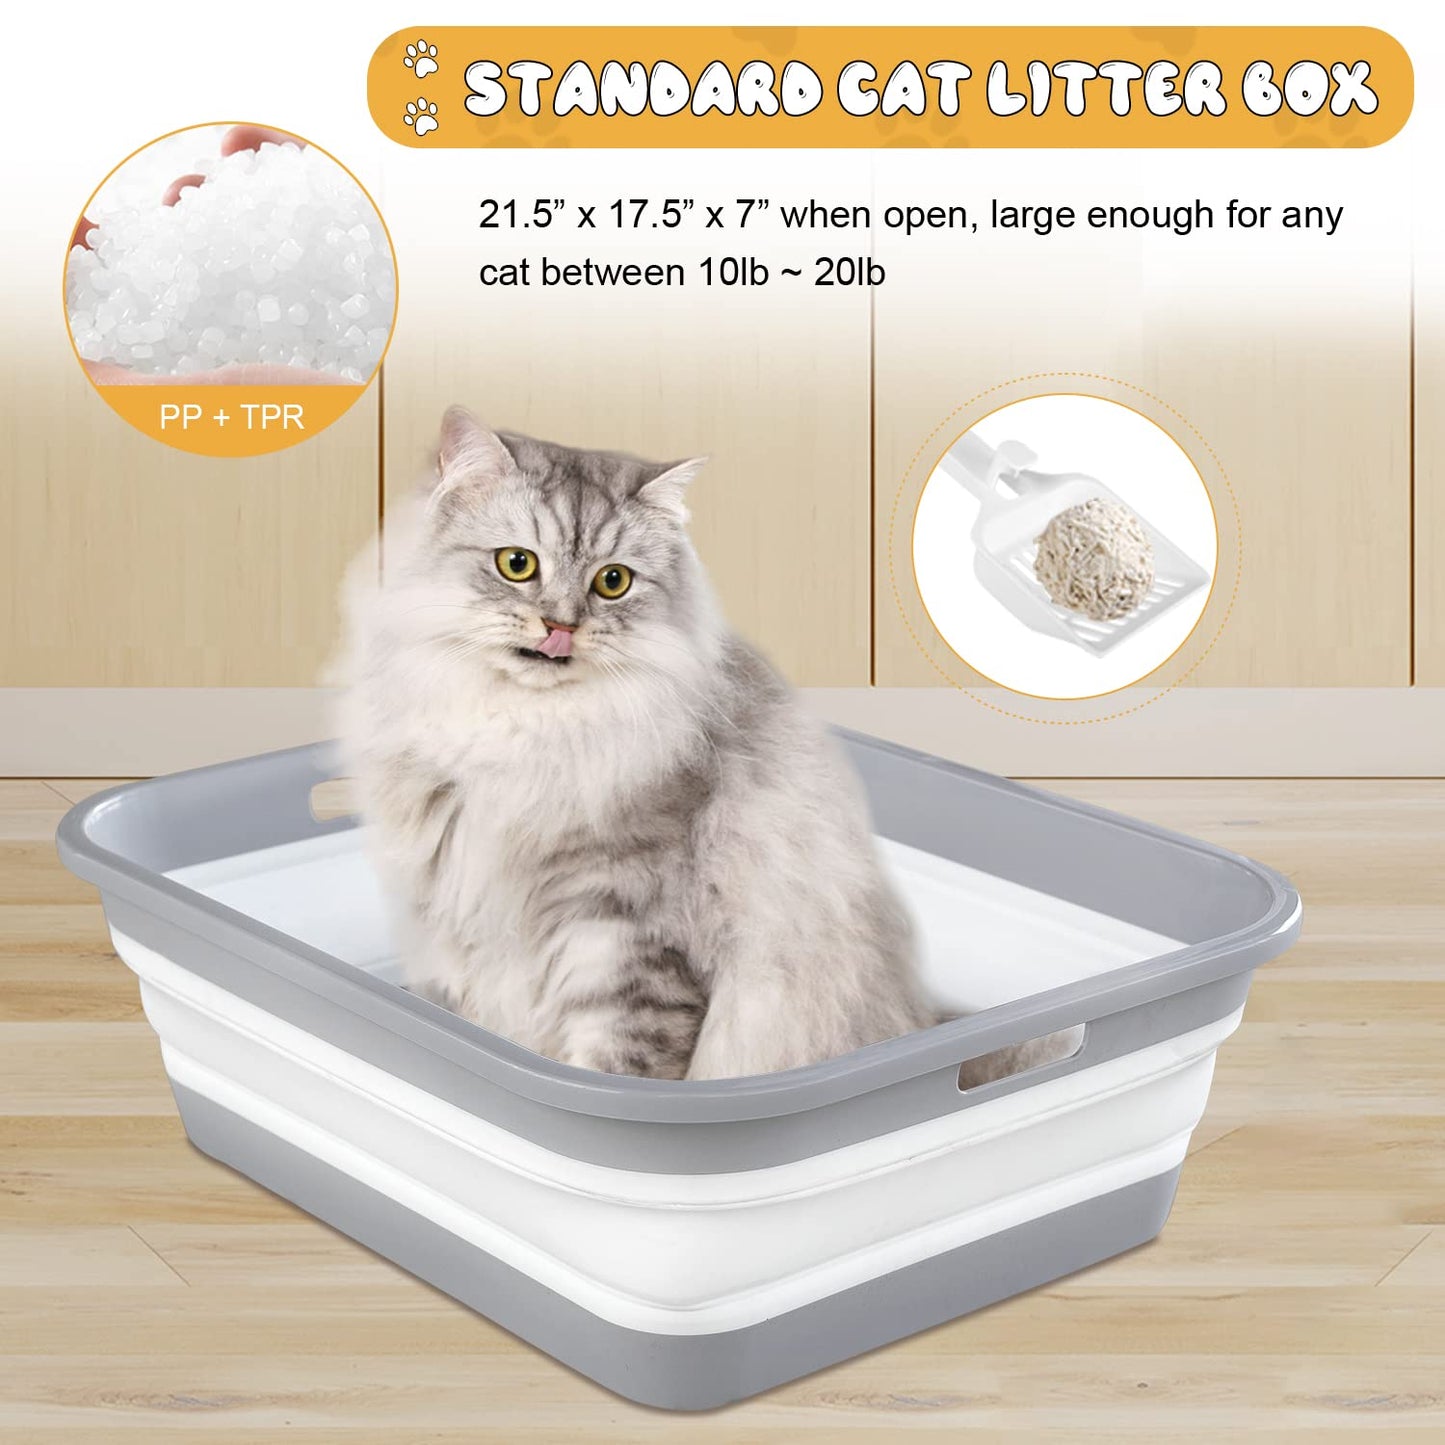 Senior Cat Litter Box